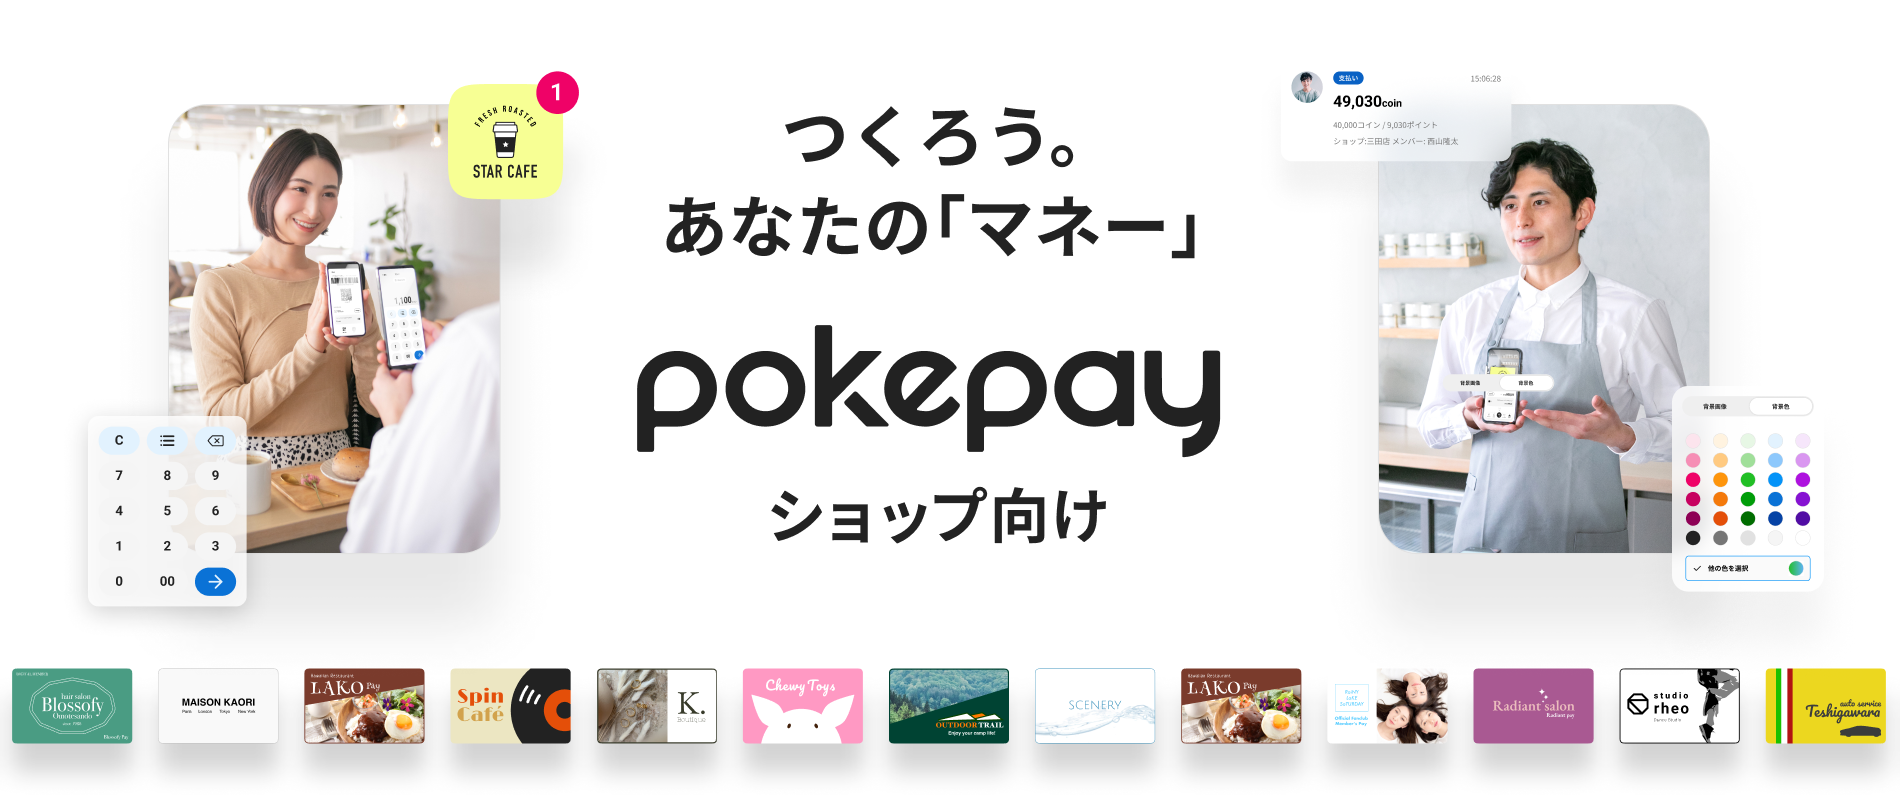 スモールビジネスをサポートするPokepay新バージョン。Pokepay MyBrands